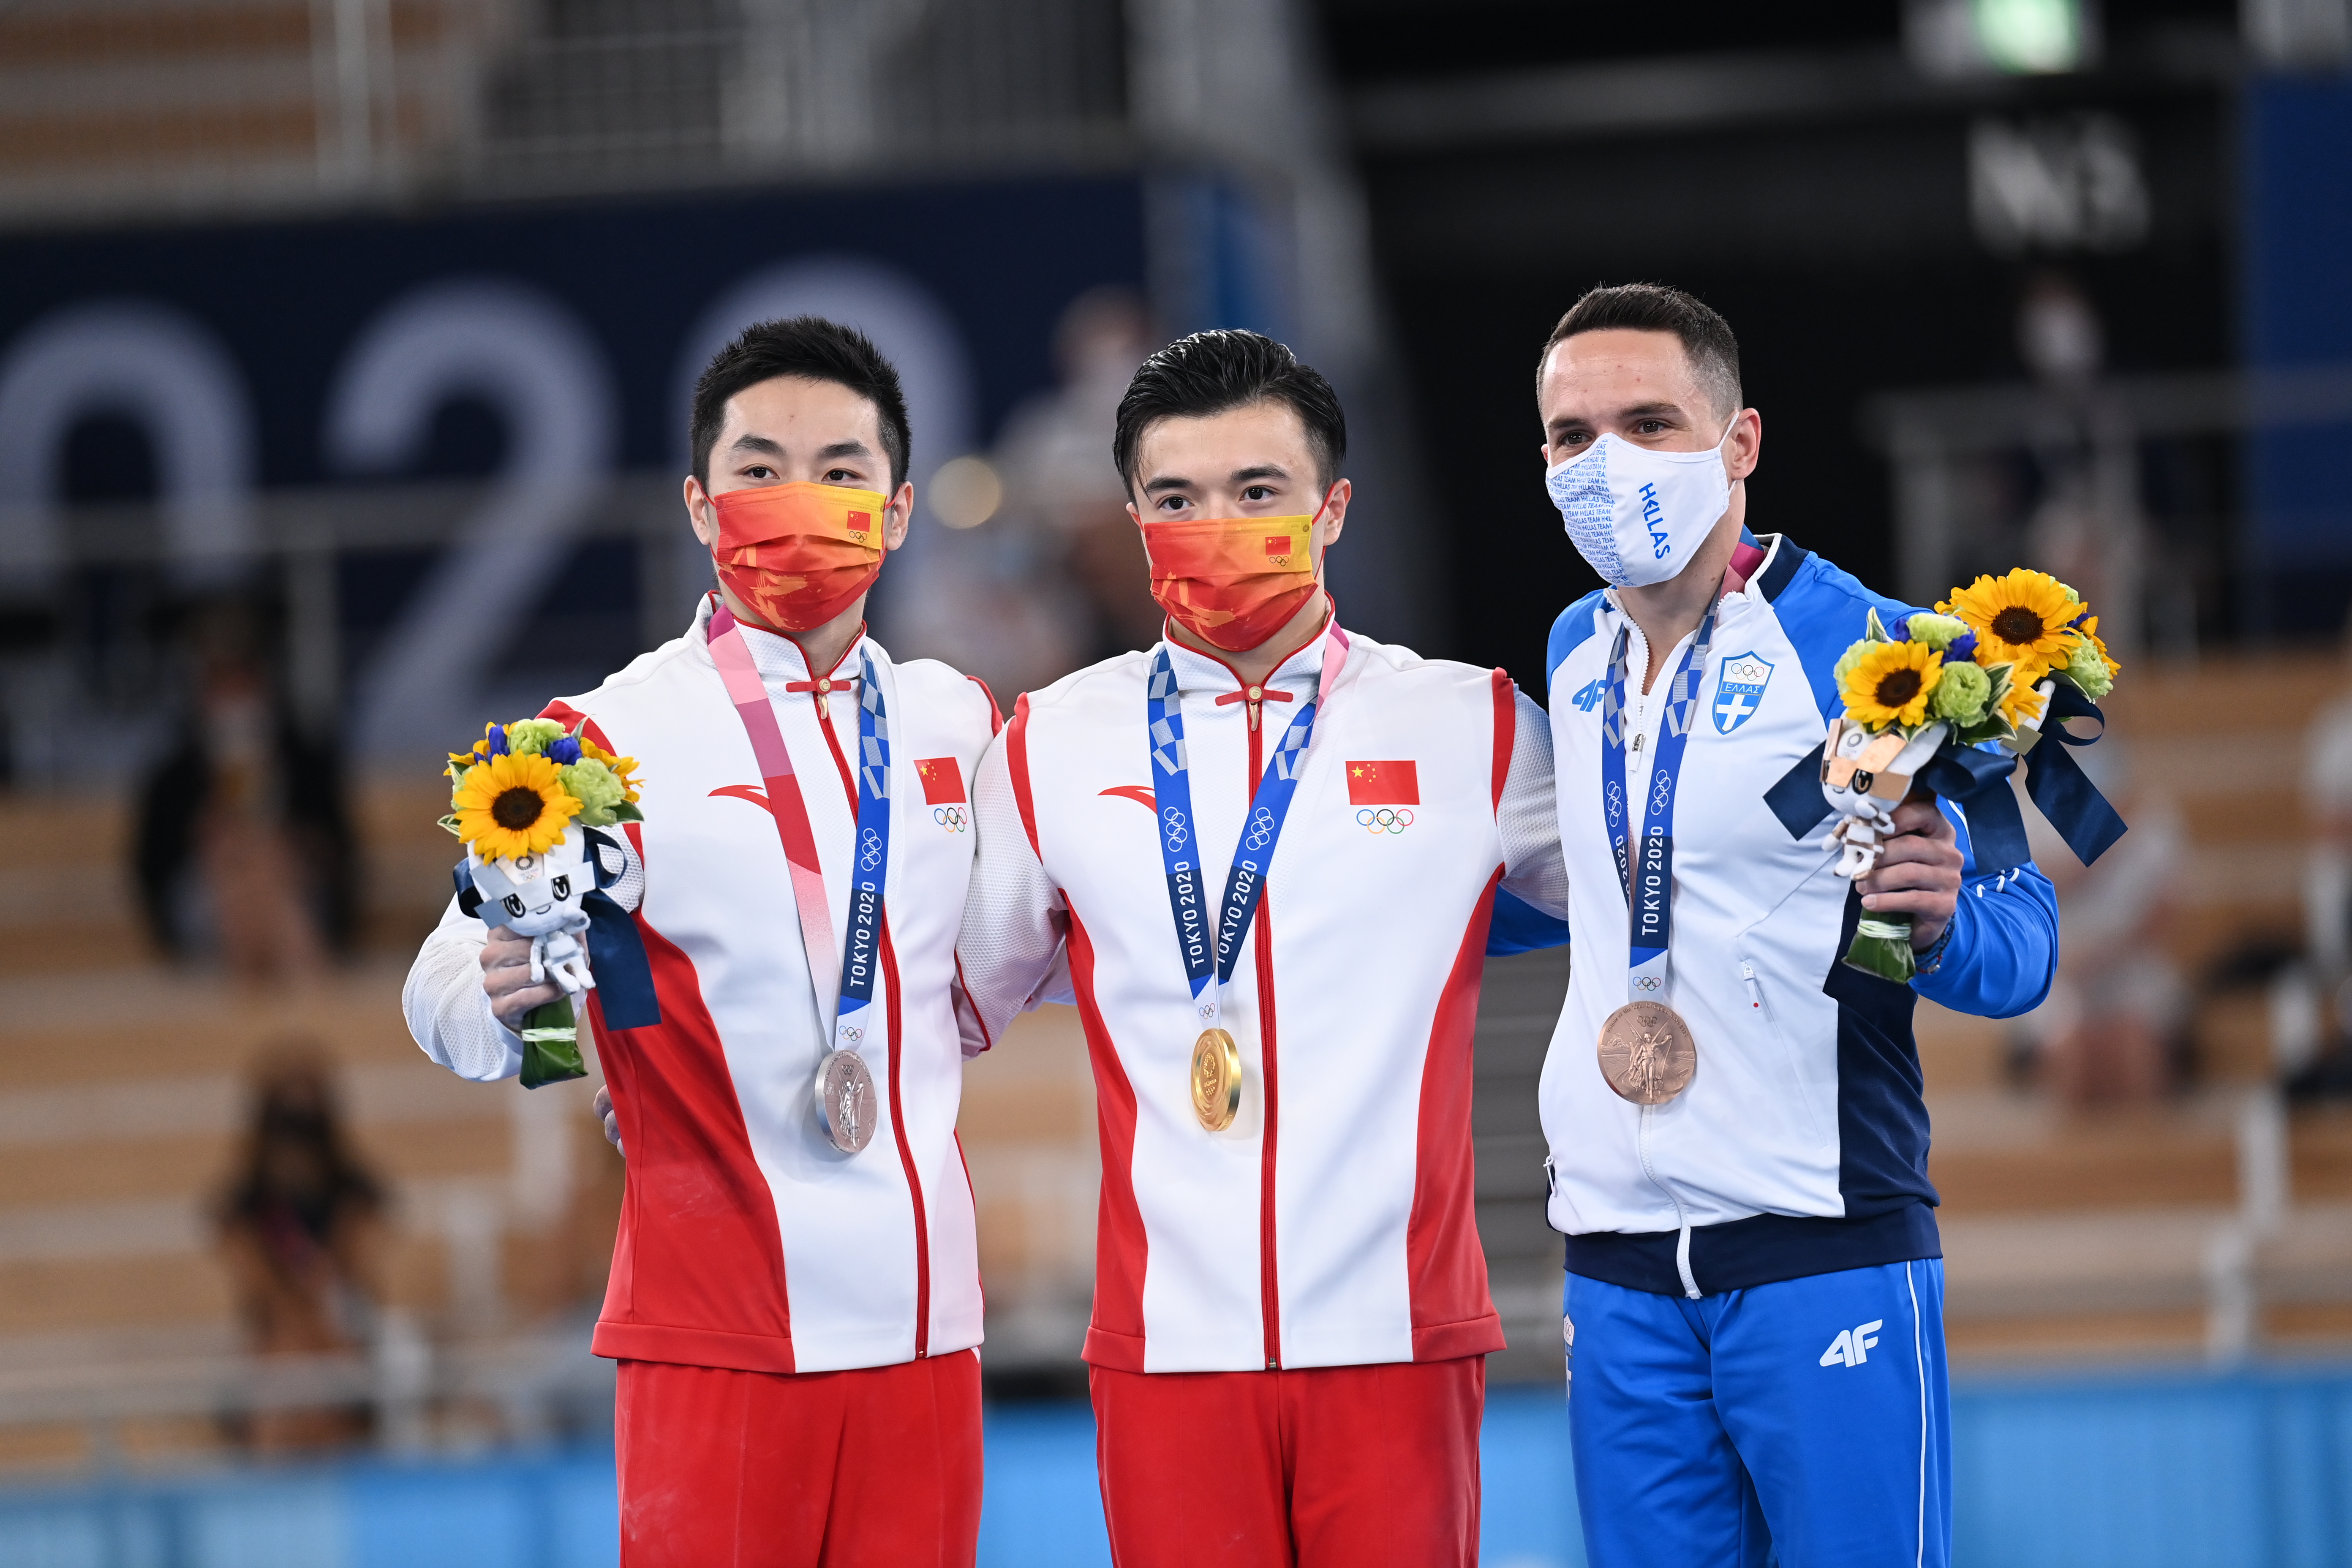 8月2日，冠军中国选手刘洋（中）、亚军中国选手尤浩（左）、季军希腊选手佩德罗尼亚斯在颁奖仪式上。新华社记者程敏摄